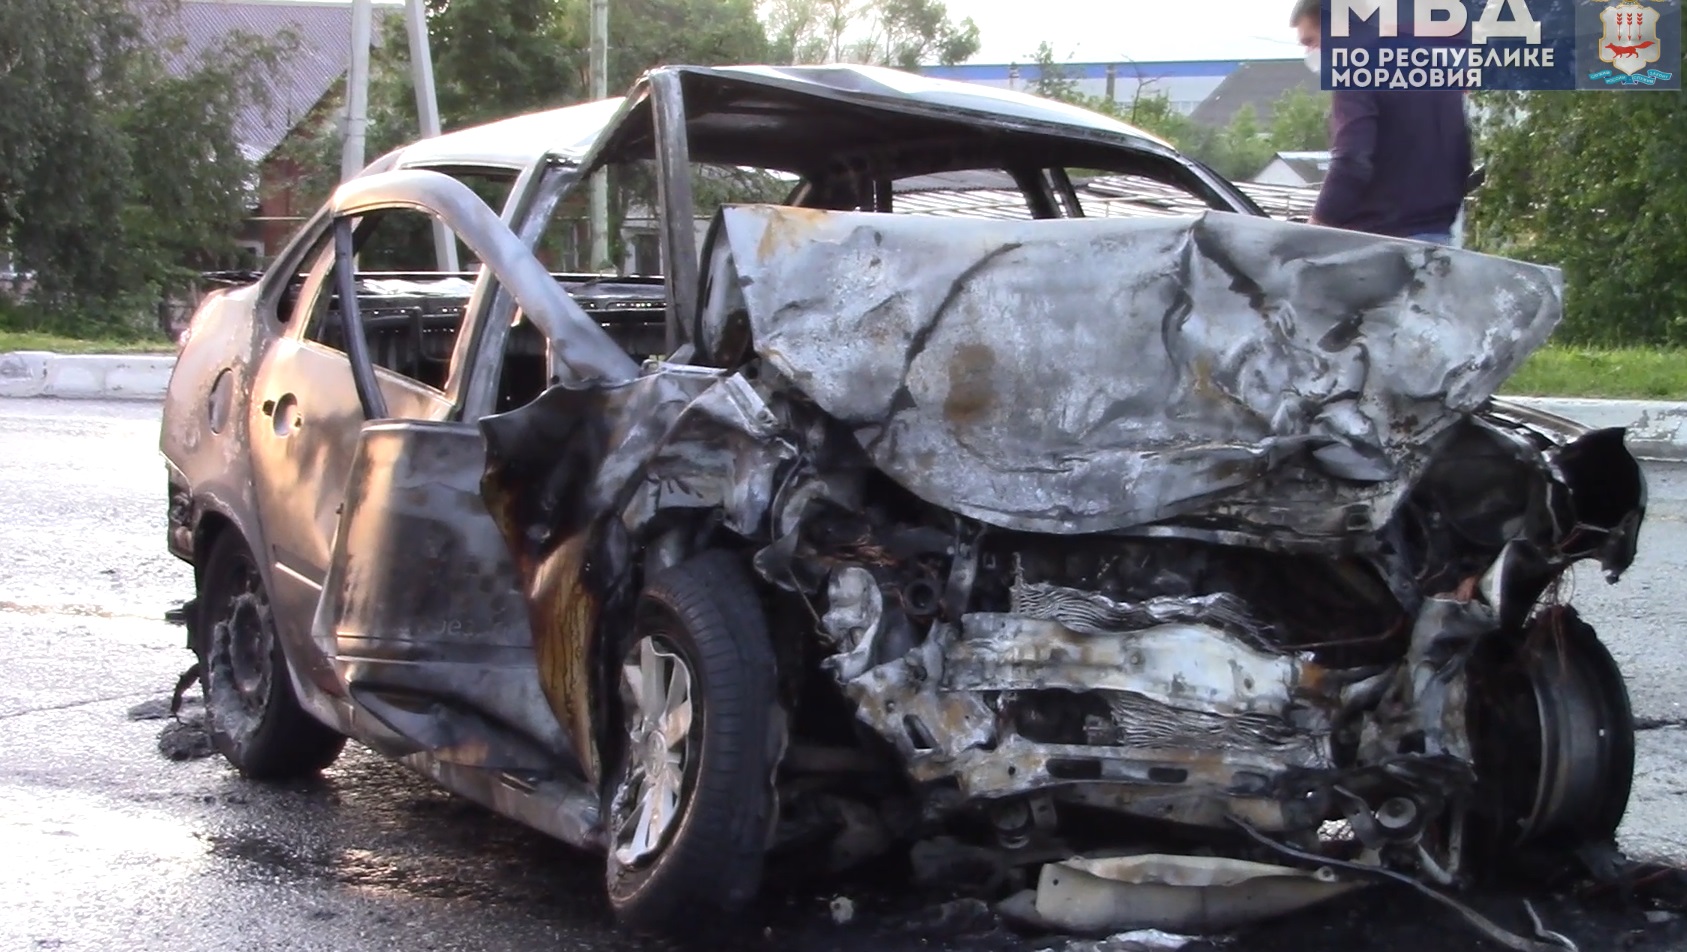 
		
		Погибли шестеро. Пензенское авто попало в жуткое ДТП в Саранске
		
	